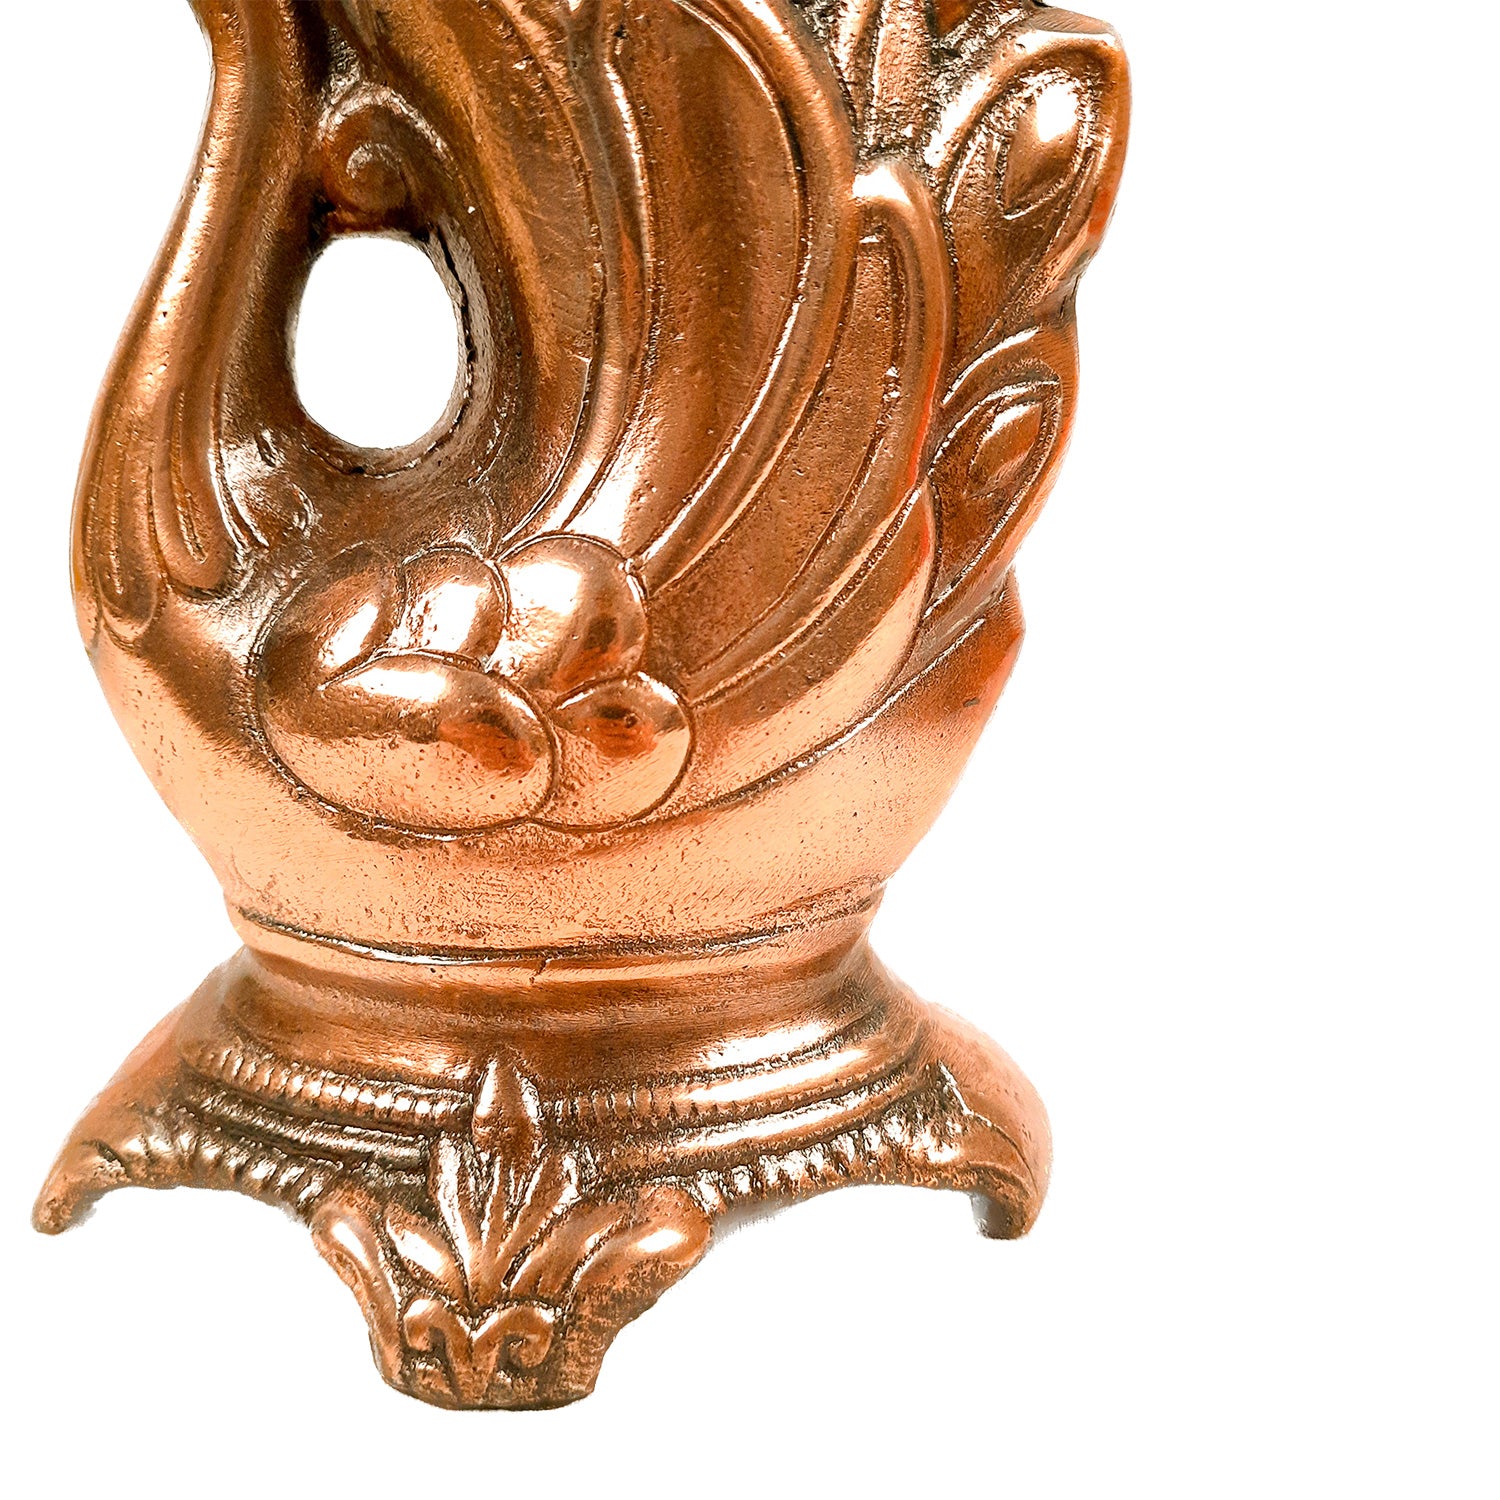 Flower Vase Swan Design | Metal Flower Pot - For Table, Home, Living Room Decor & Gifts - 9 Inch - Apkamart